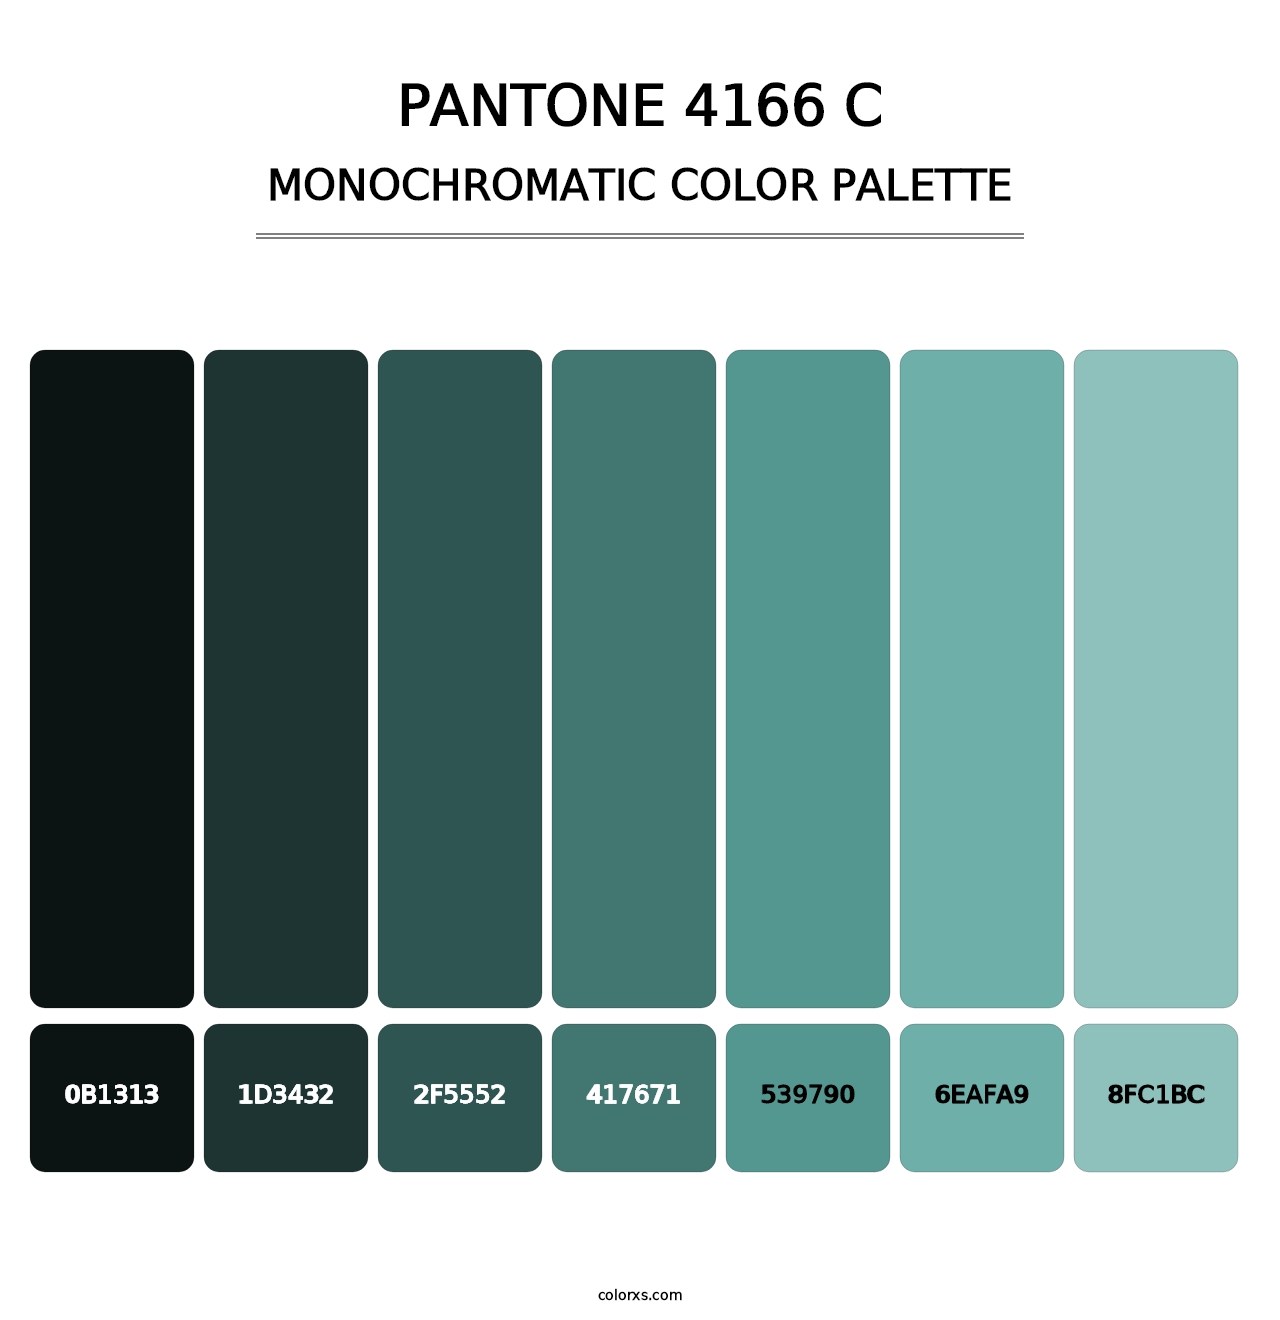 PANTONE 4166 C - Monochromatic Color Palette